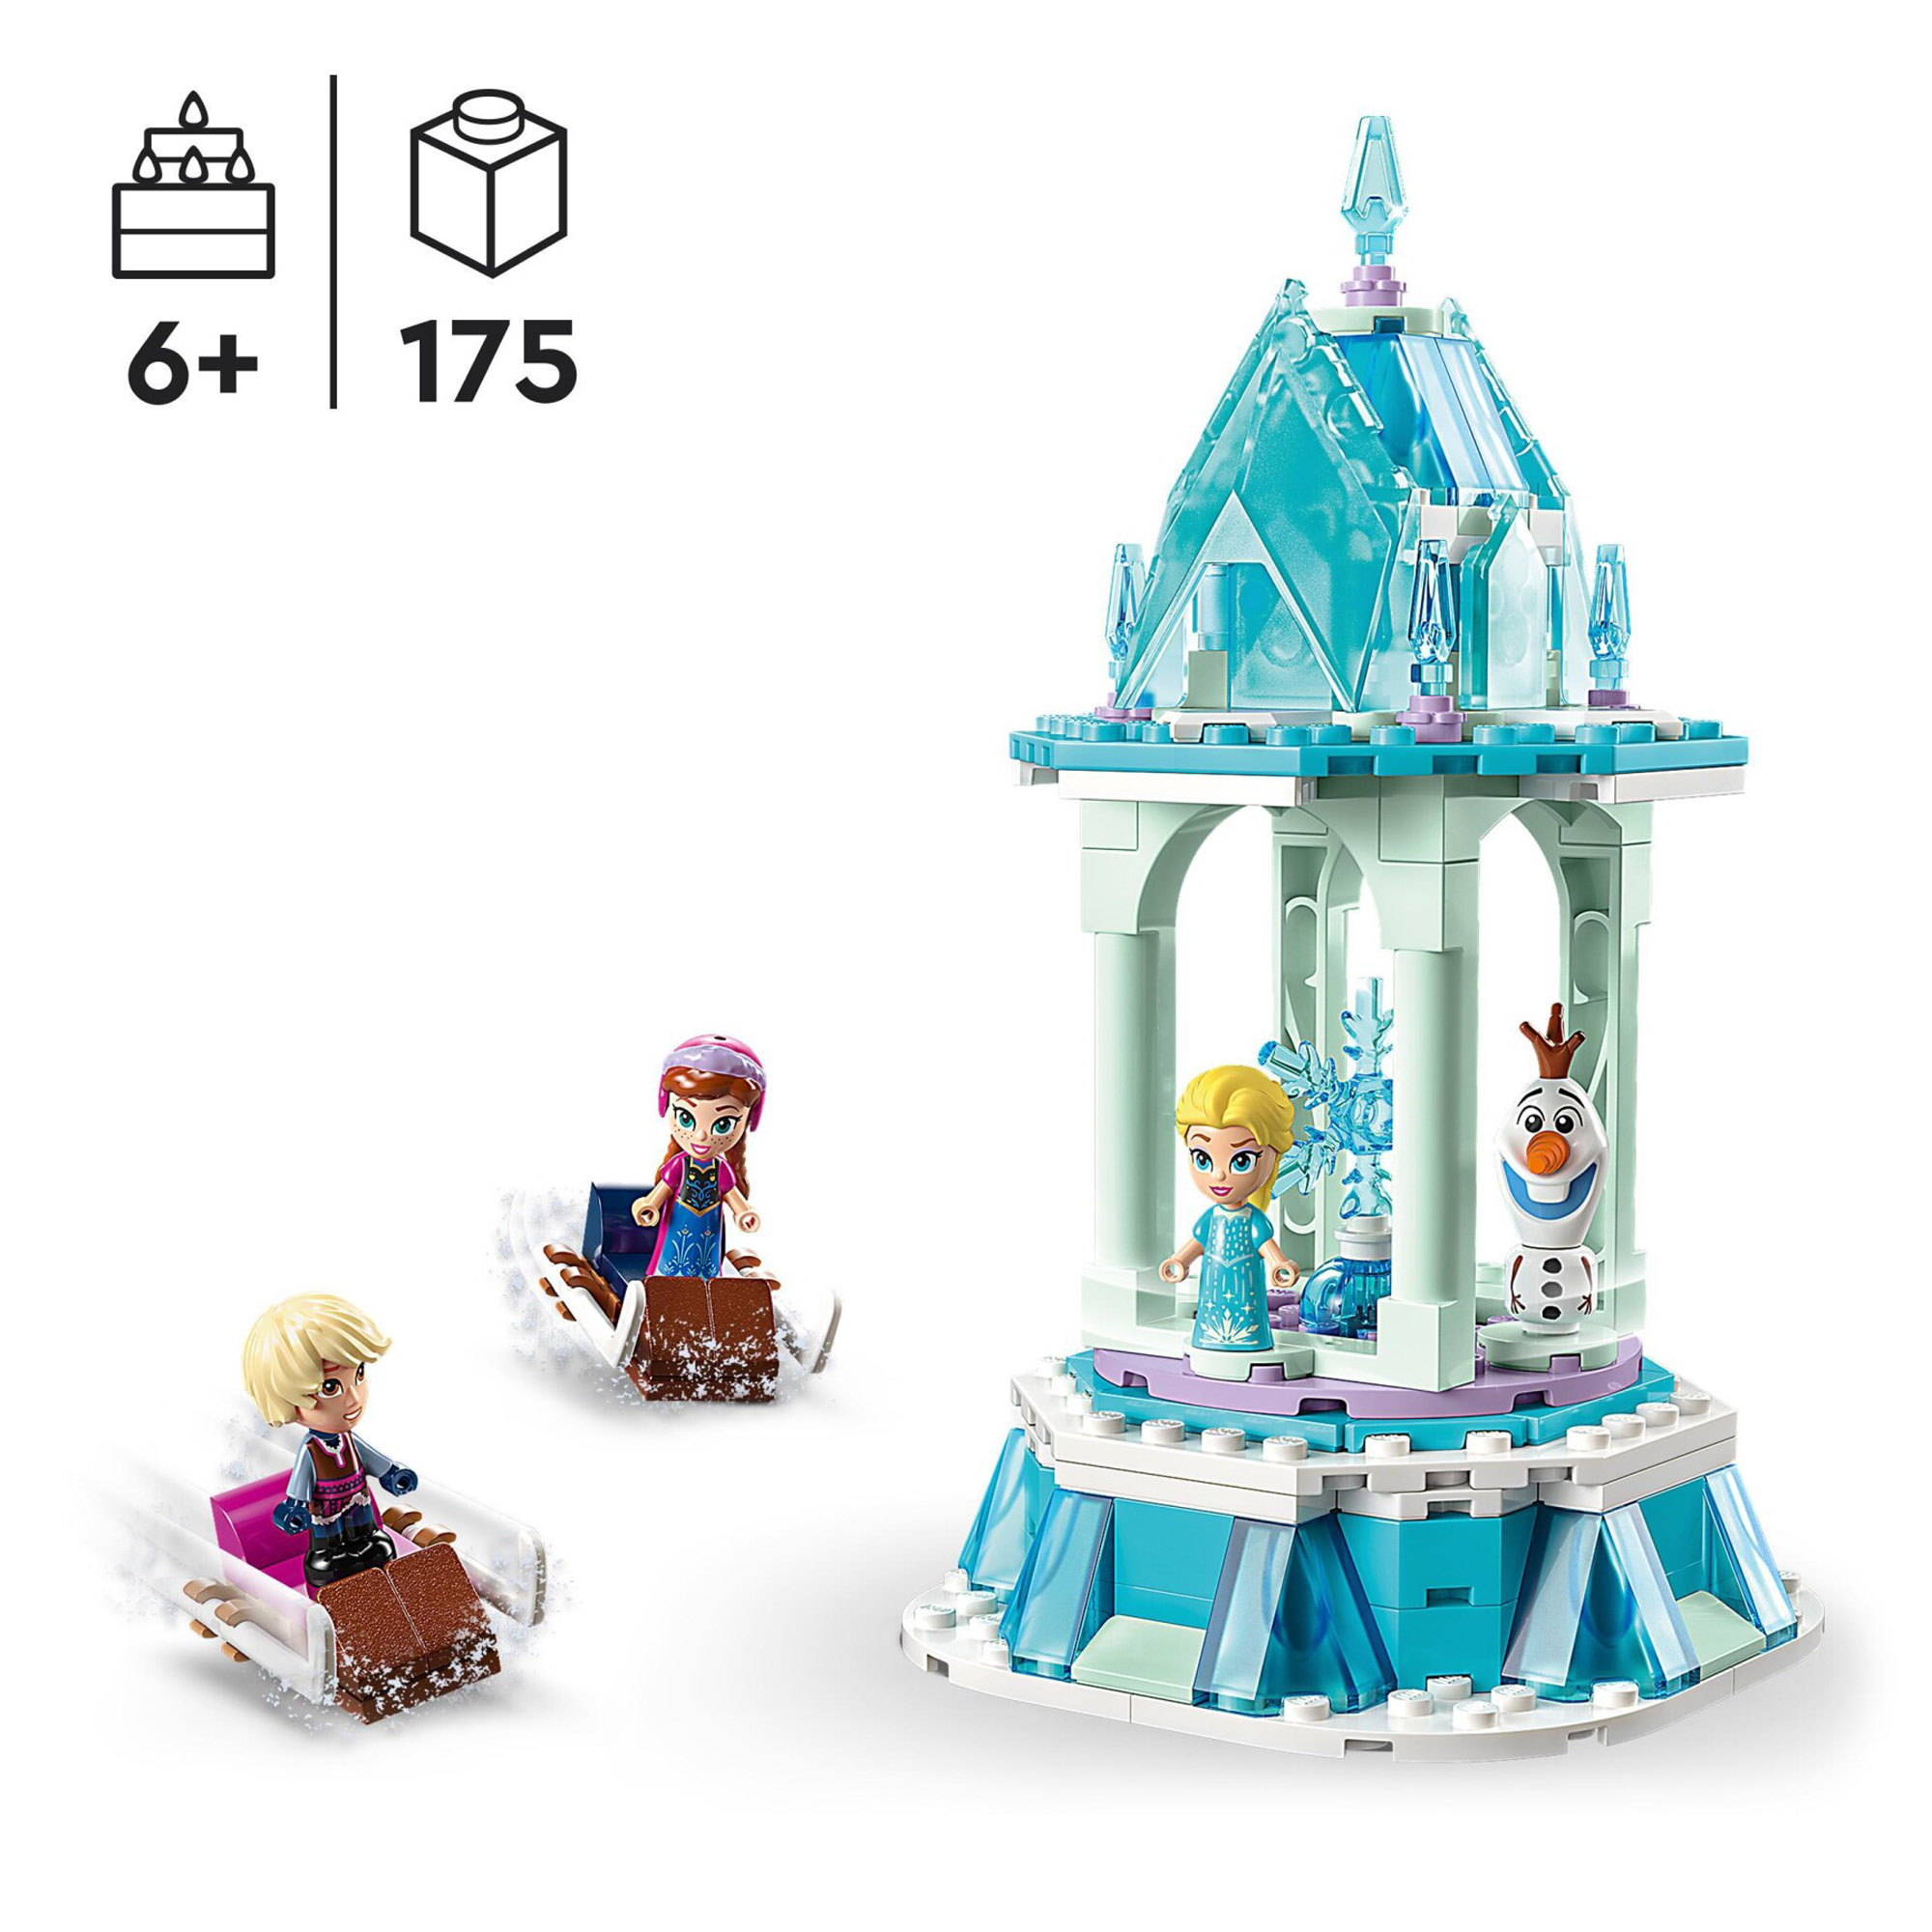 LEGO Disney Frozen 43218 La giostra magica di Anna ed Elsa, con micro bambolina - Disney, LEGO